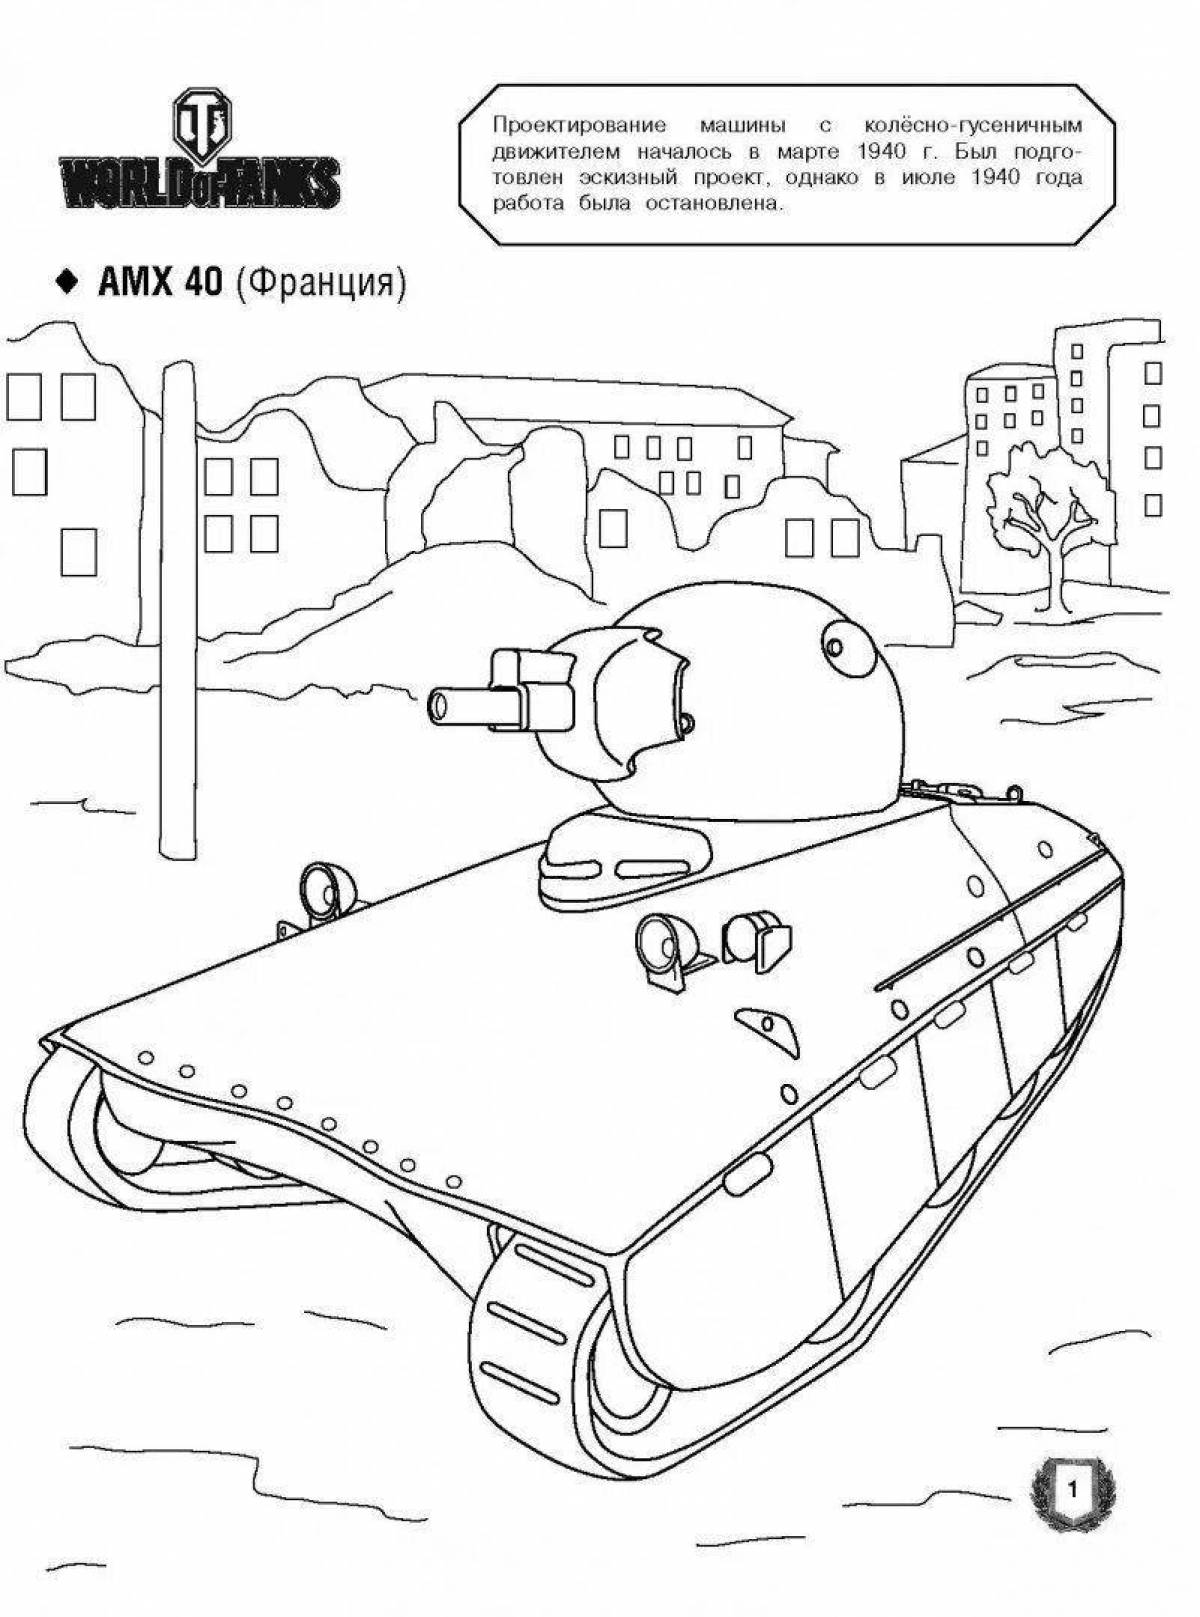 Fun coloring games for tanks